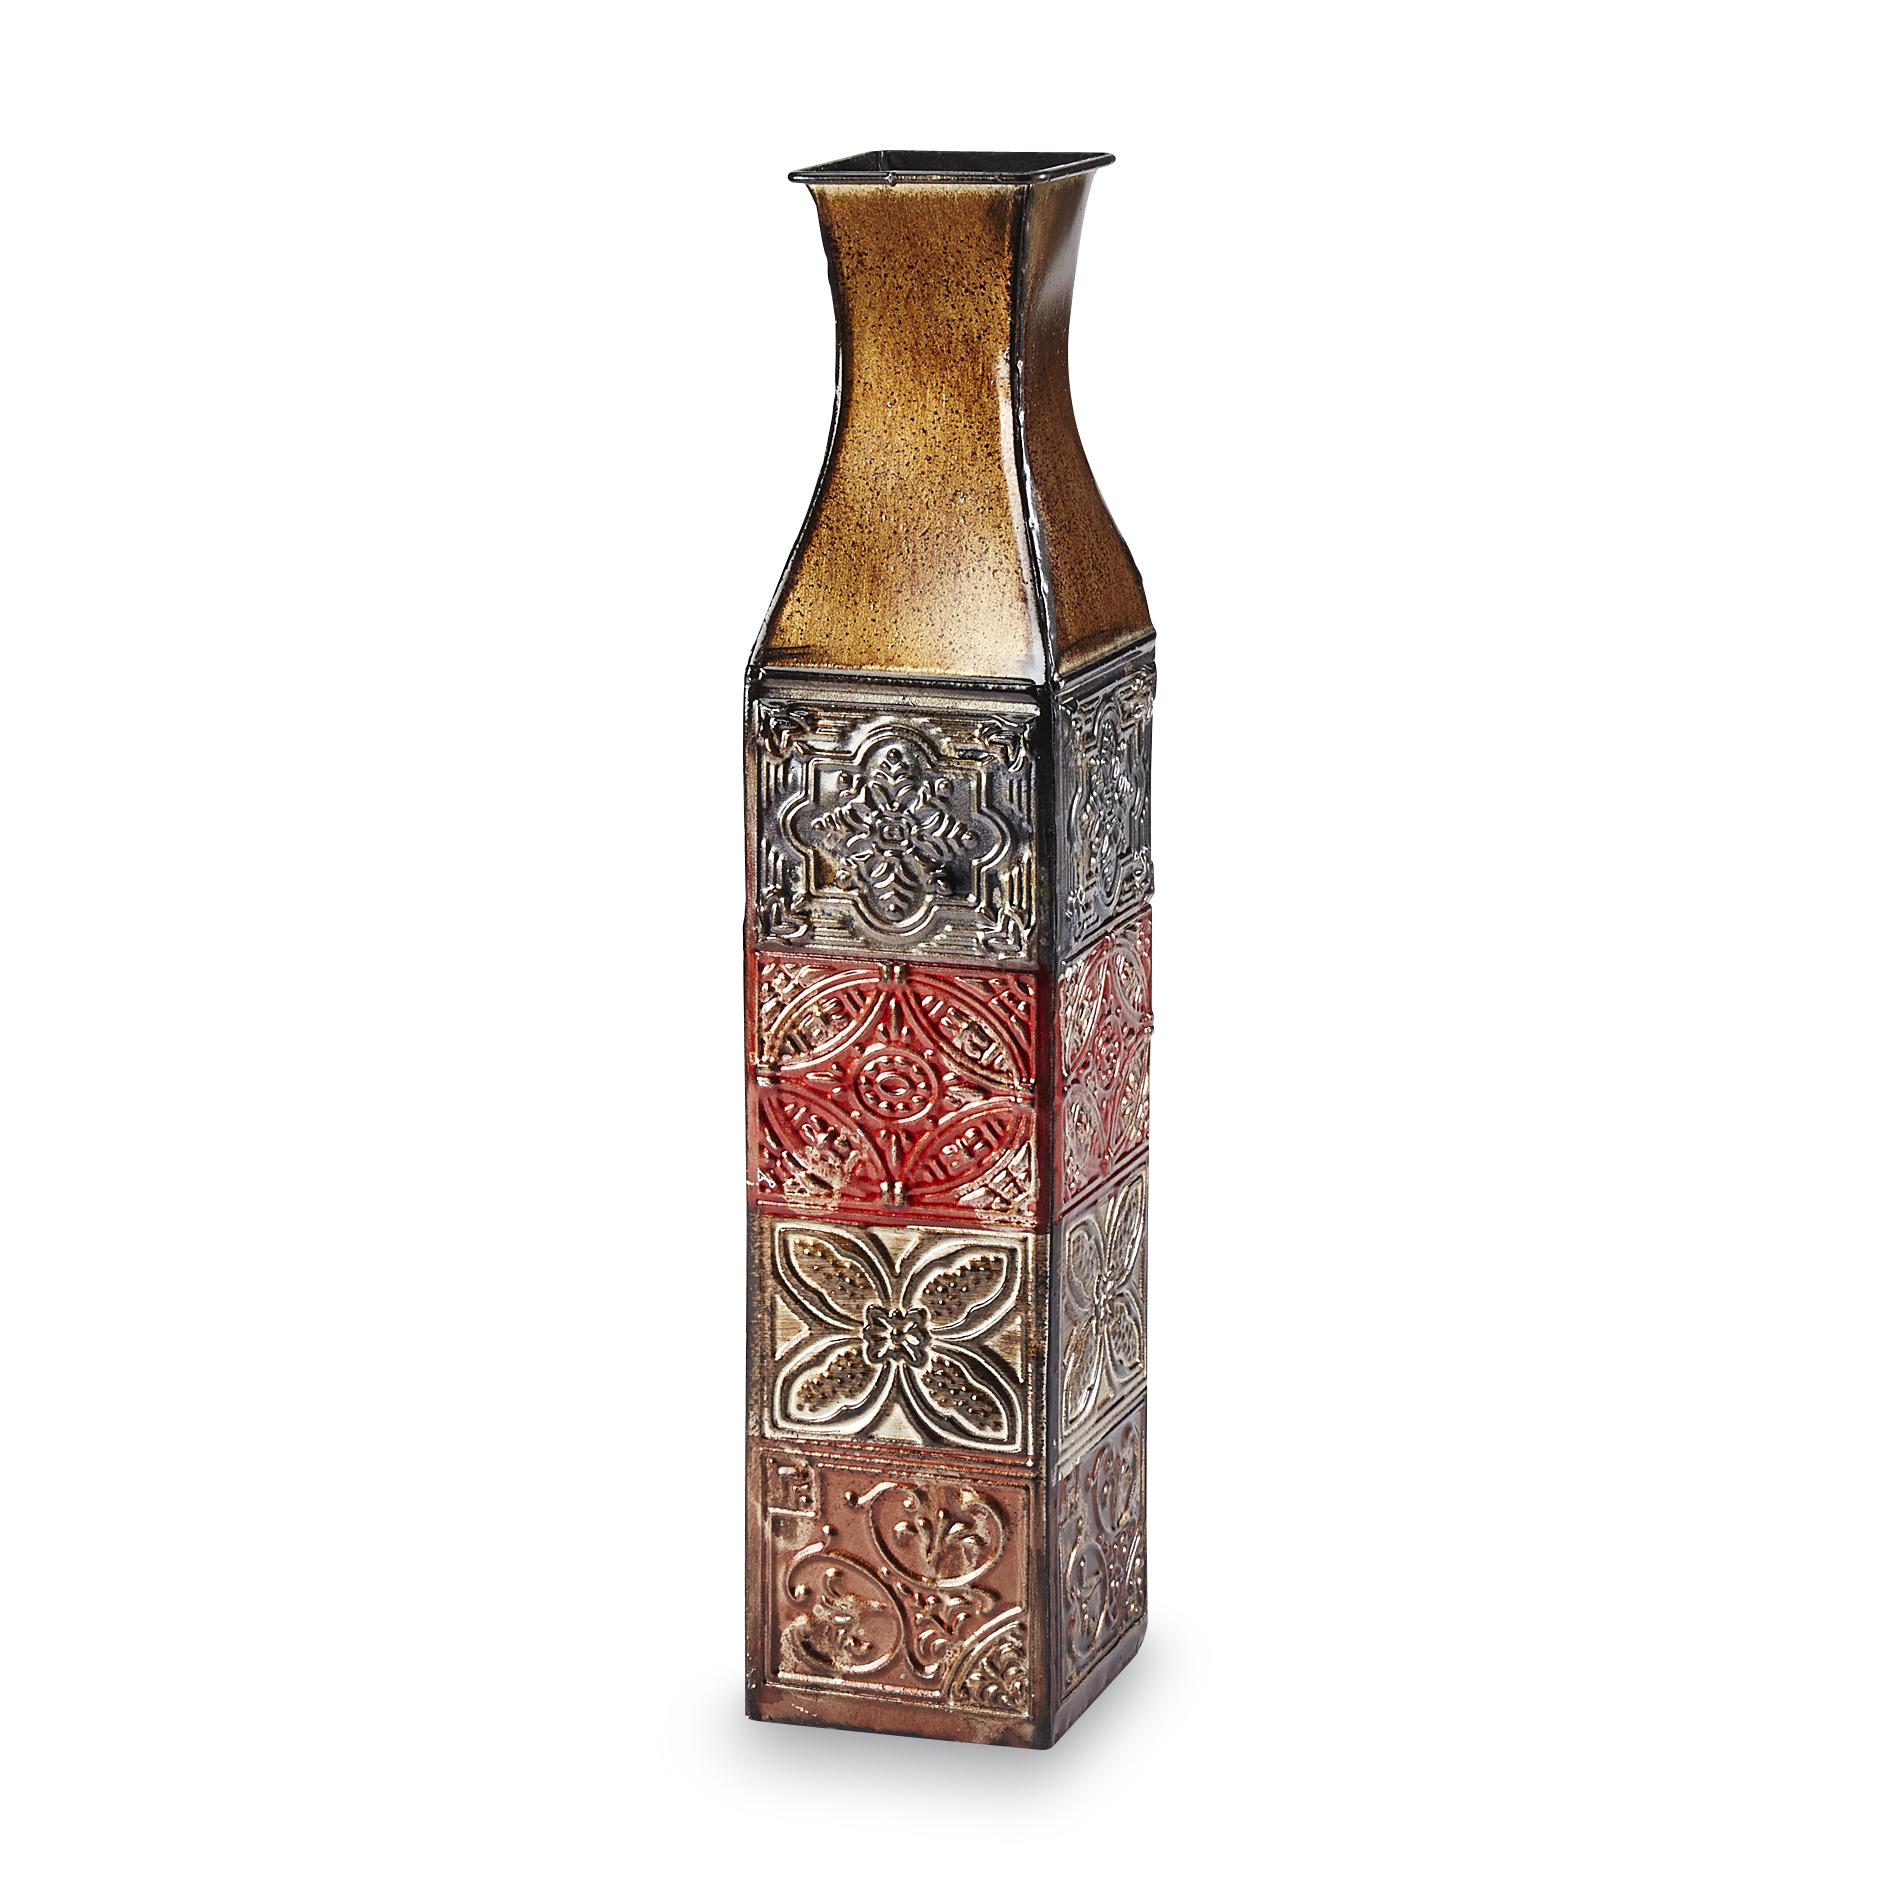 Elements 17" Decorative Vase - Floral Tiles